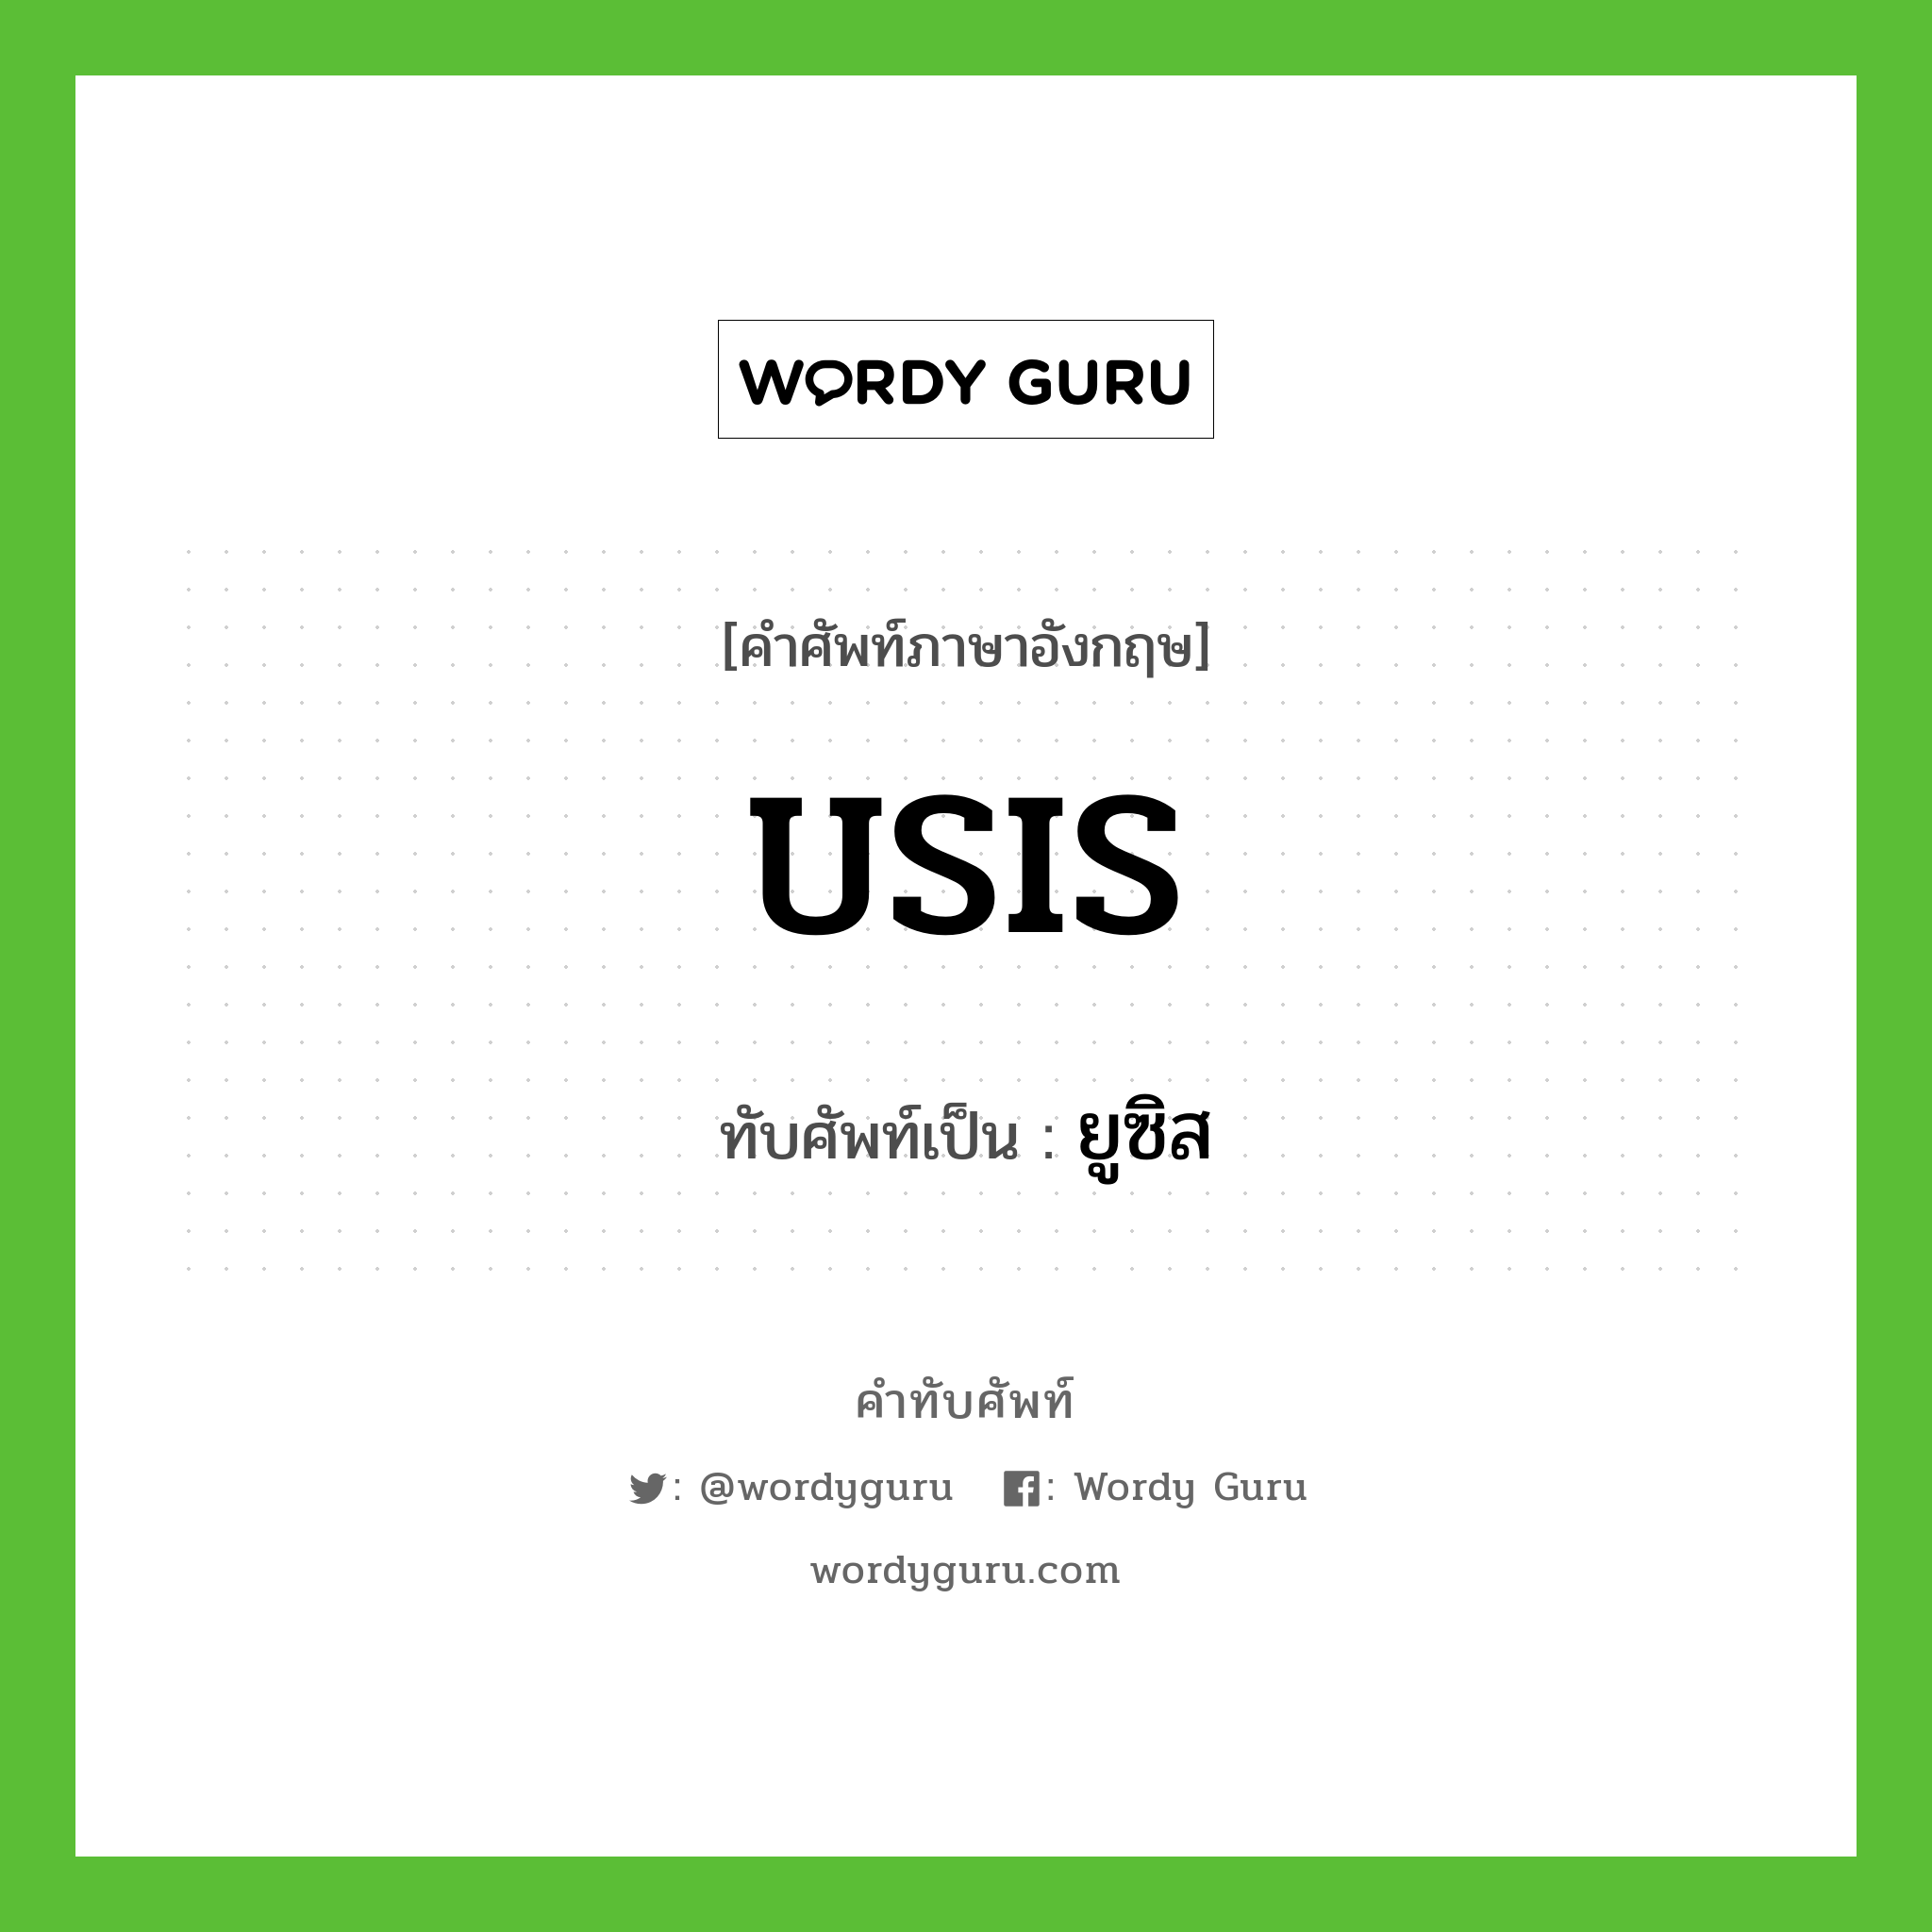 USIS เขียนเป็นคำไทยว่าอะไร?, คำศัพท์ภาษาอังกฤษ USIS ทับศัพท์เป็น ยูซิส